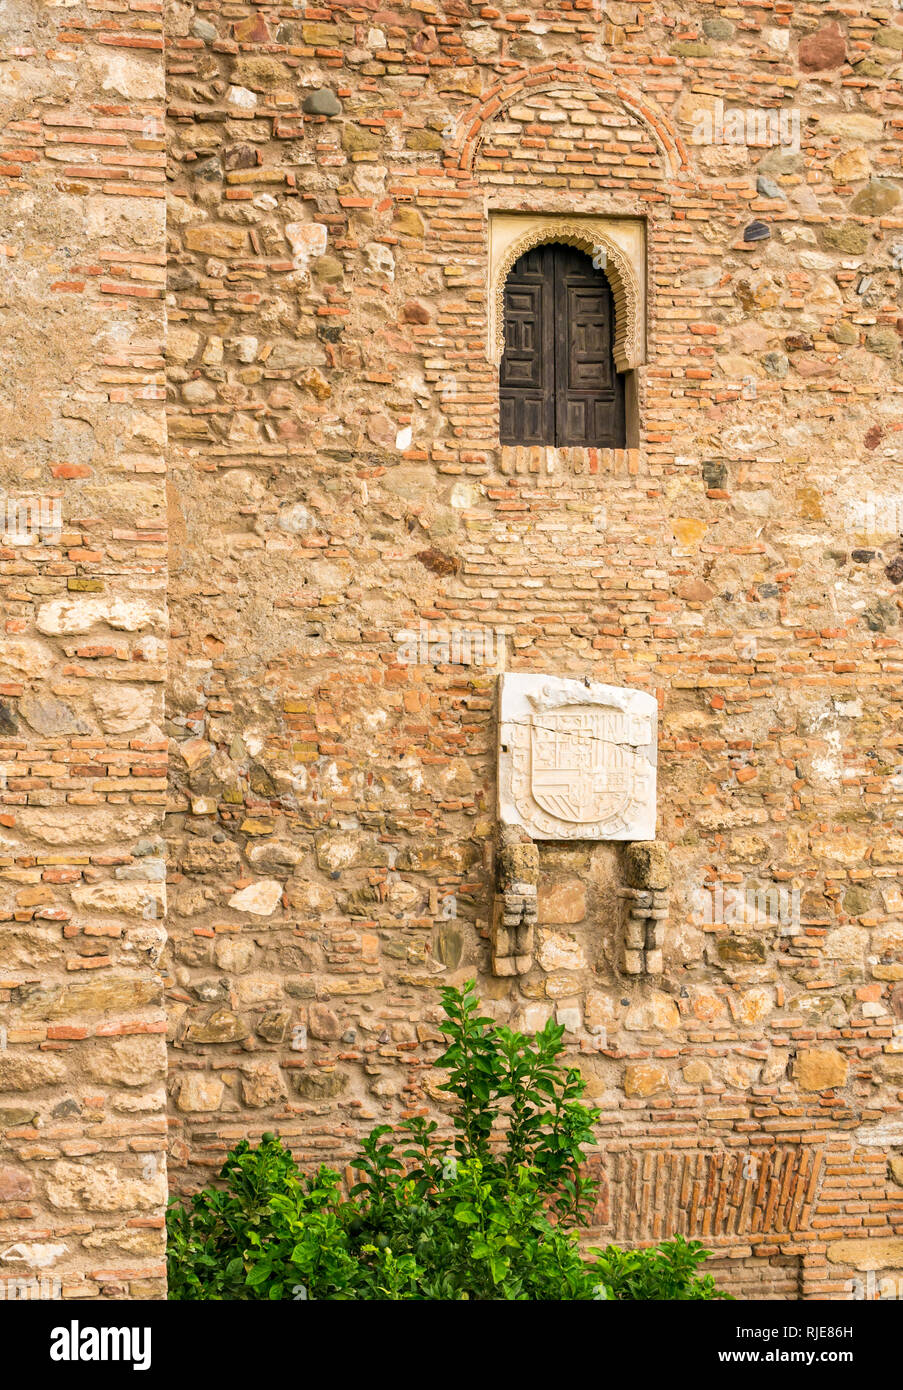 Dettaglio della muratura in pietra scolpita, Alcazaba palazzo fortificato di parete, Malaga, Andalusia, Spagna Foto Stock